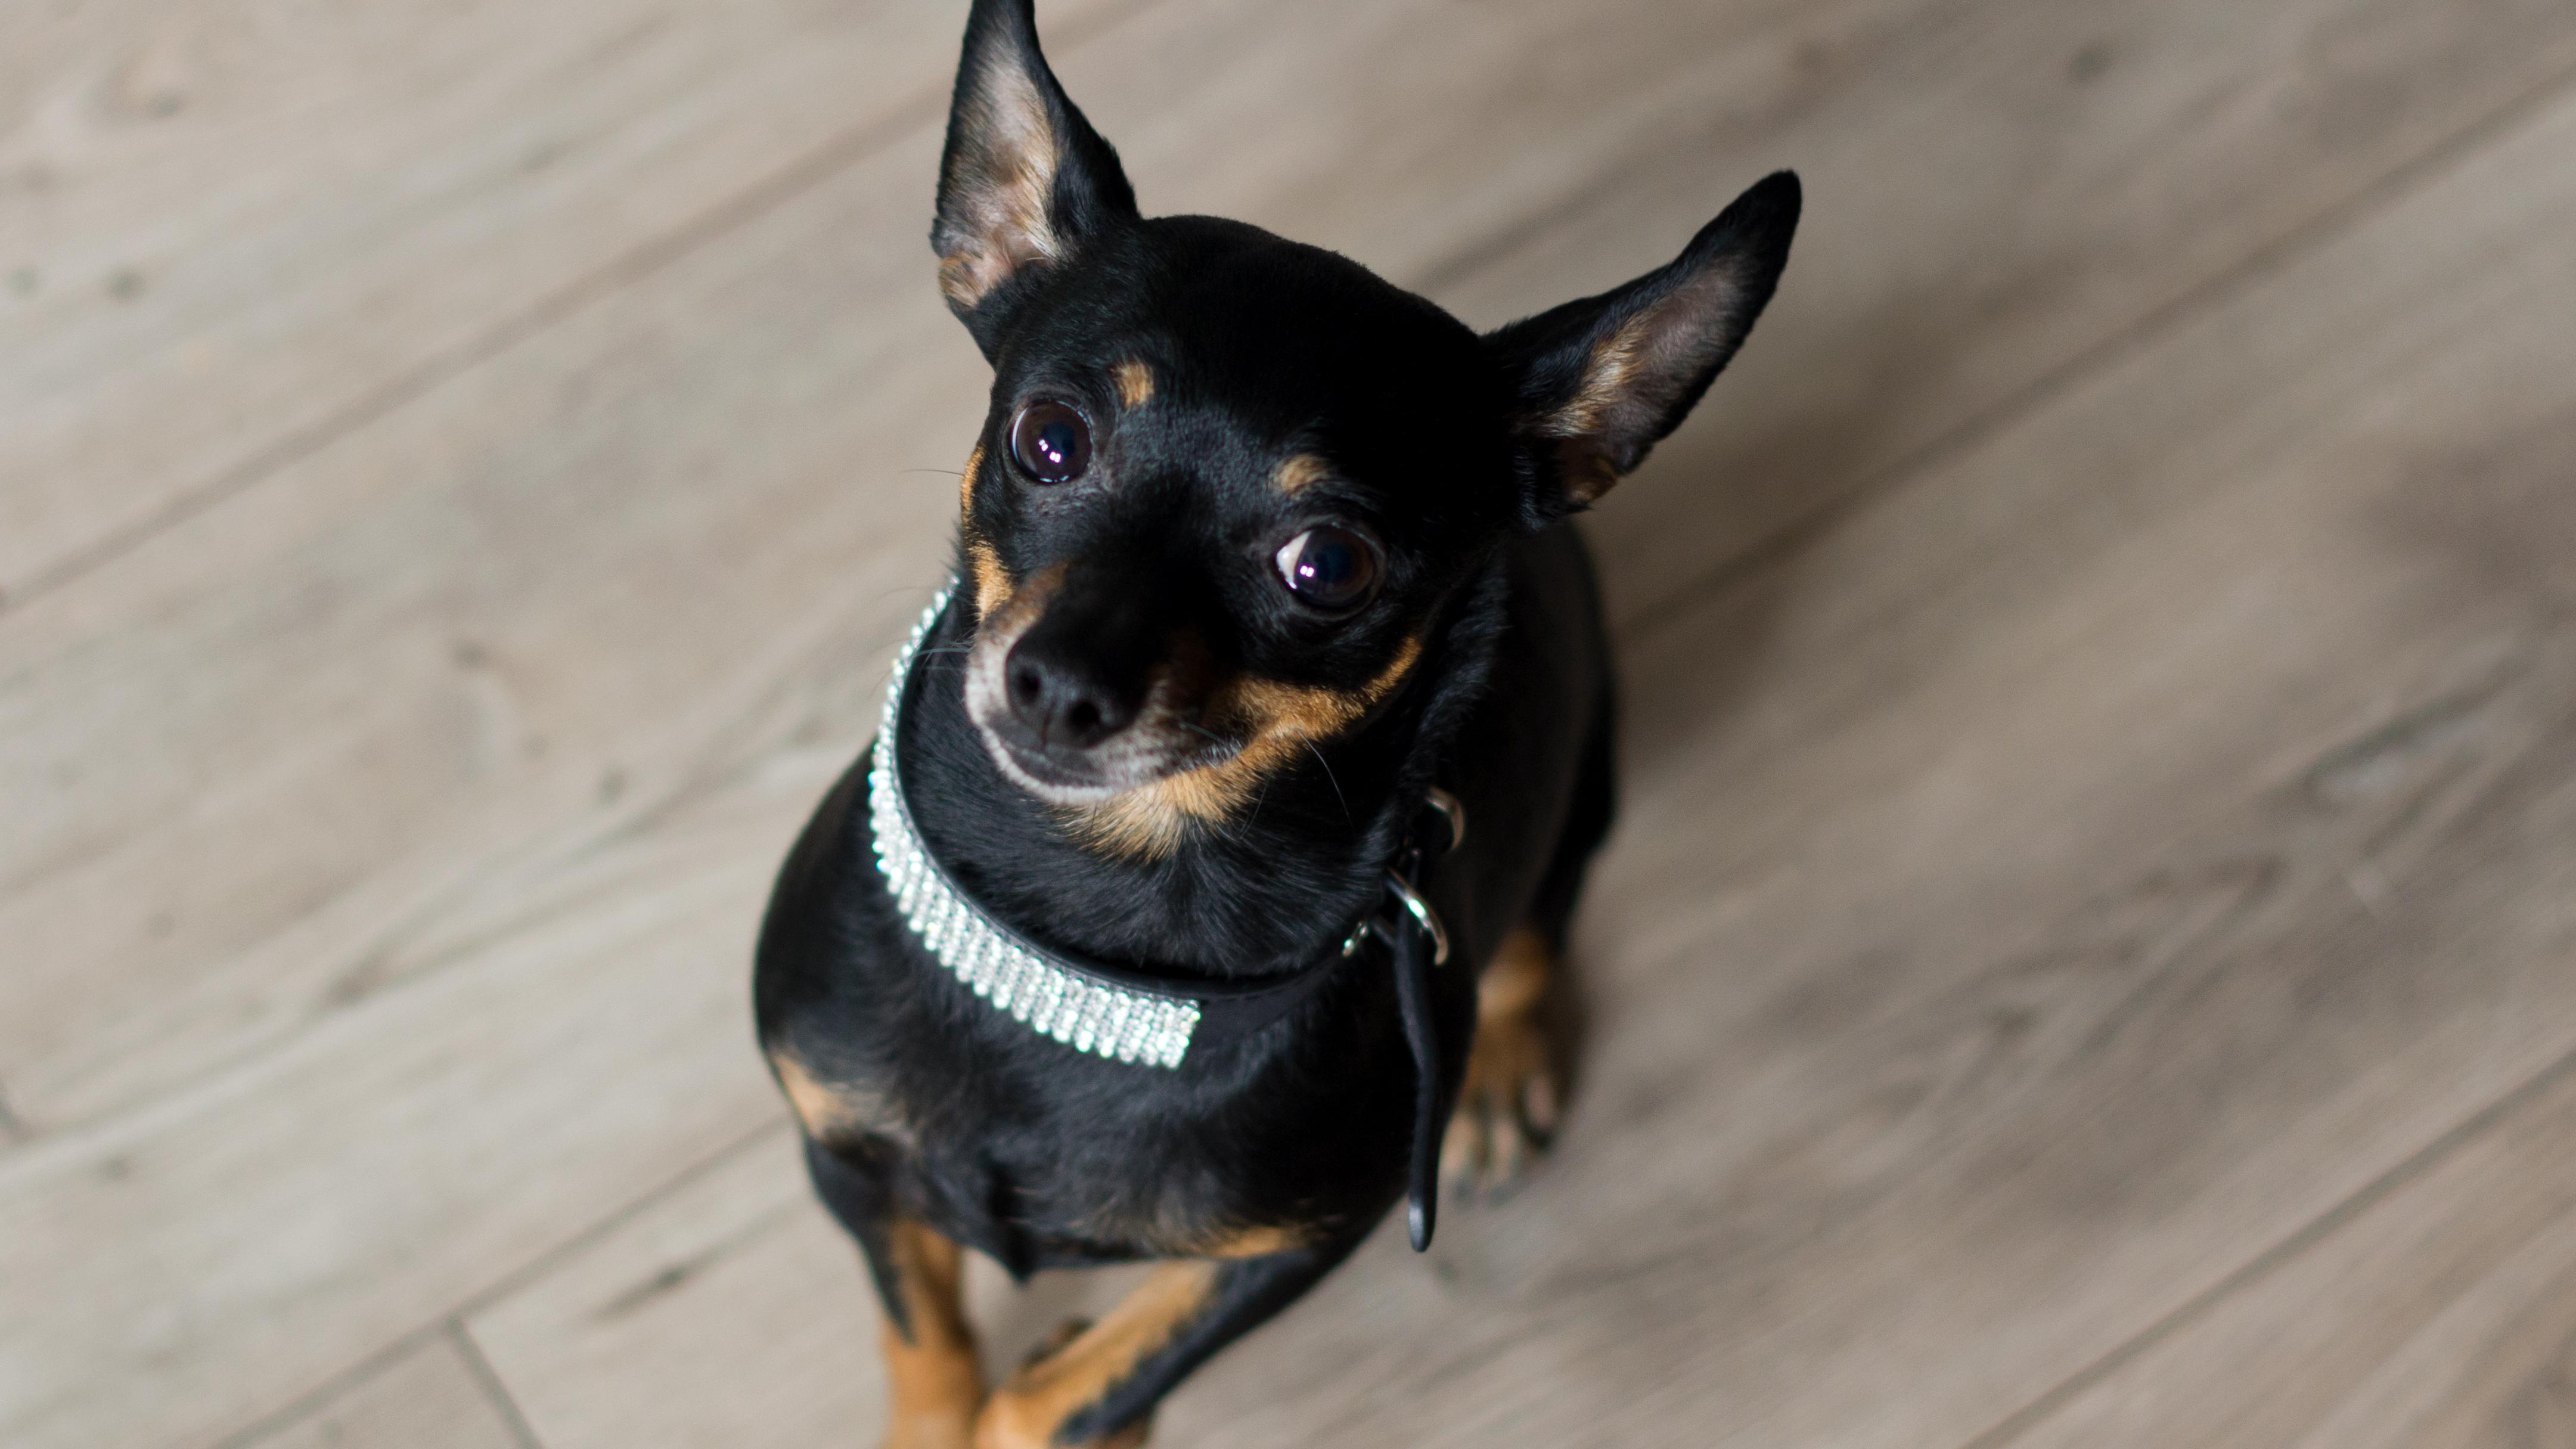 Ratlerek, czyli pinczer miniaturka – odważny pies do towarzystwa - Dom